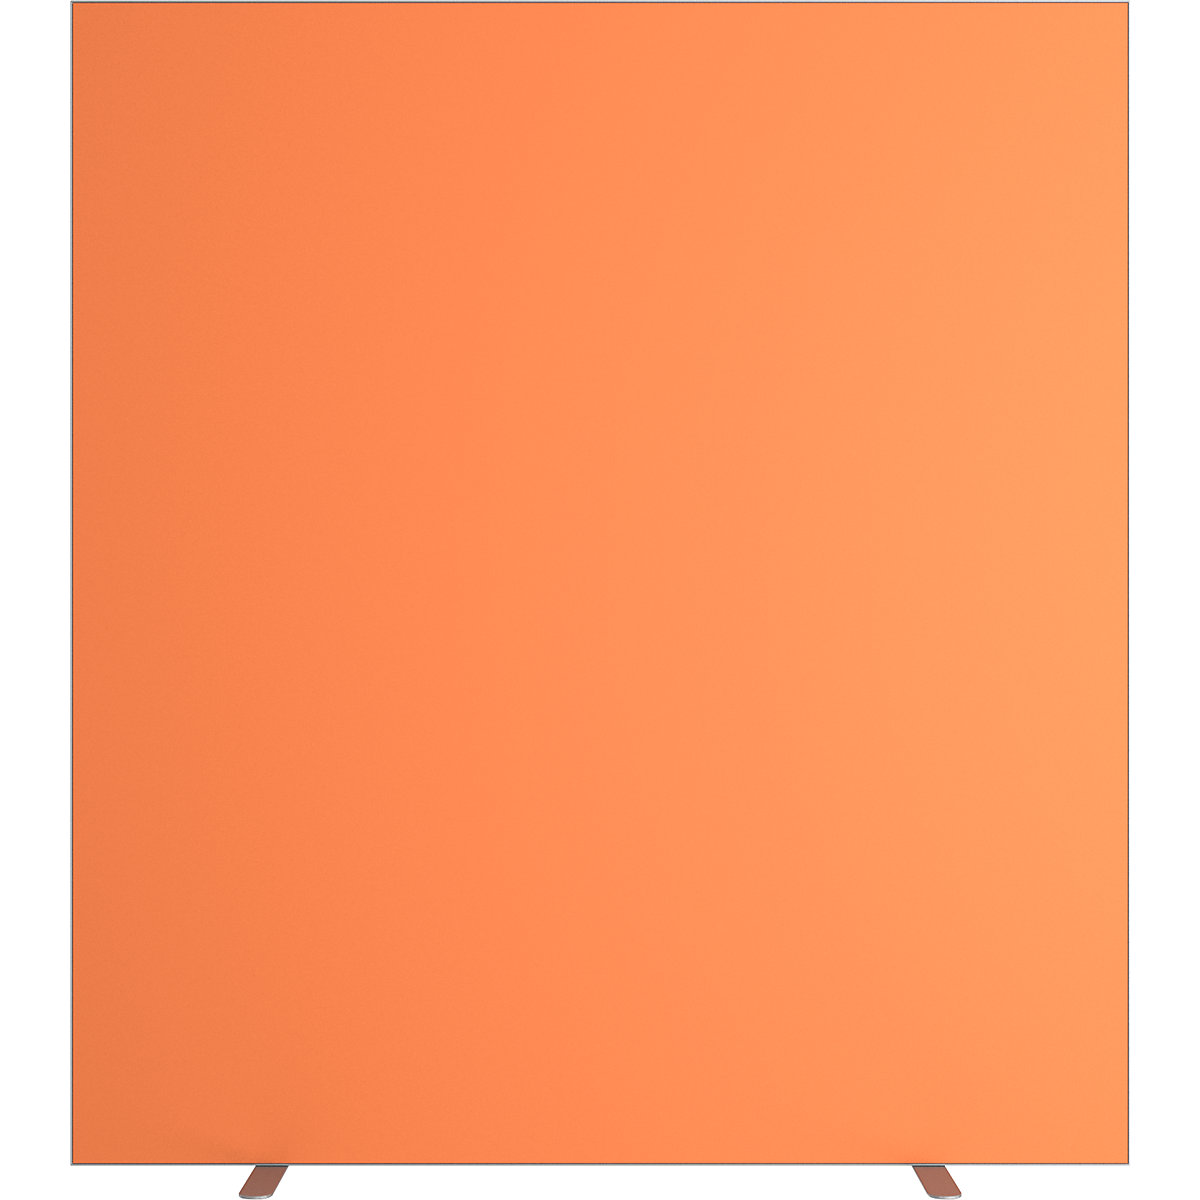 Pared separadora easyScreen, monocolor, con aislamiento acústico, naranja, anchura 1600 mm-9